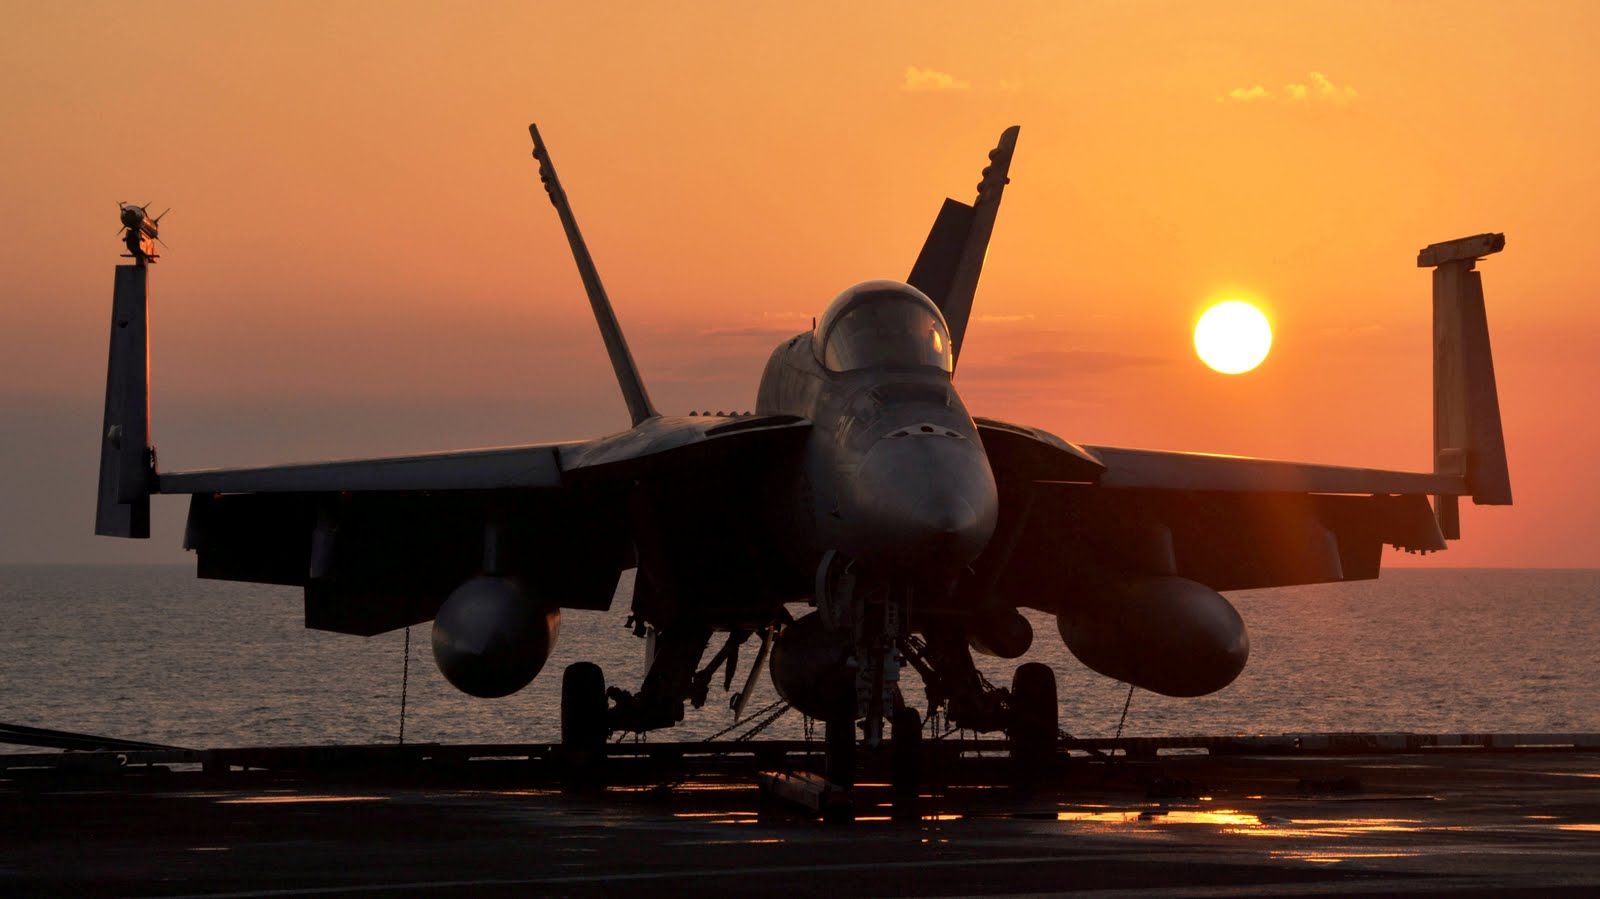 F_A_18E_Super_Hornet_wing_folded_sunset_427316_aircraft-wallpaper.jpg